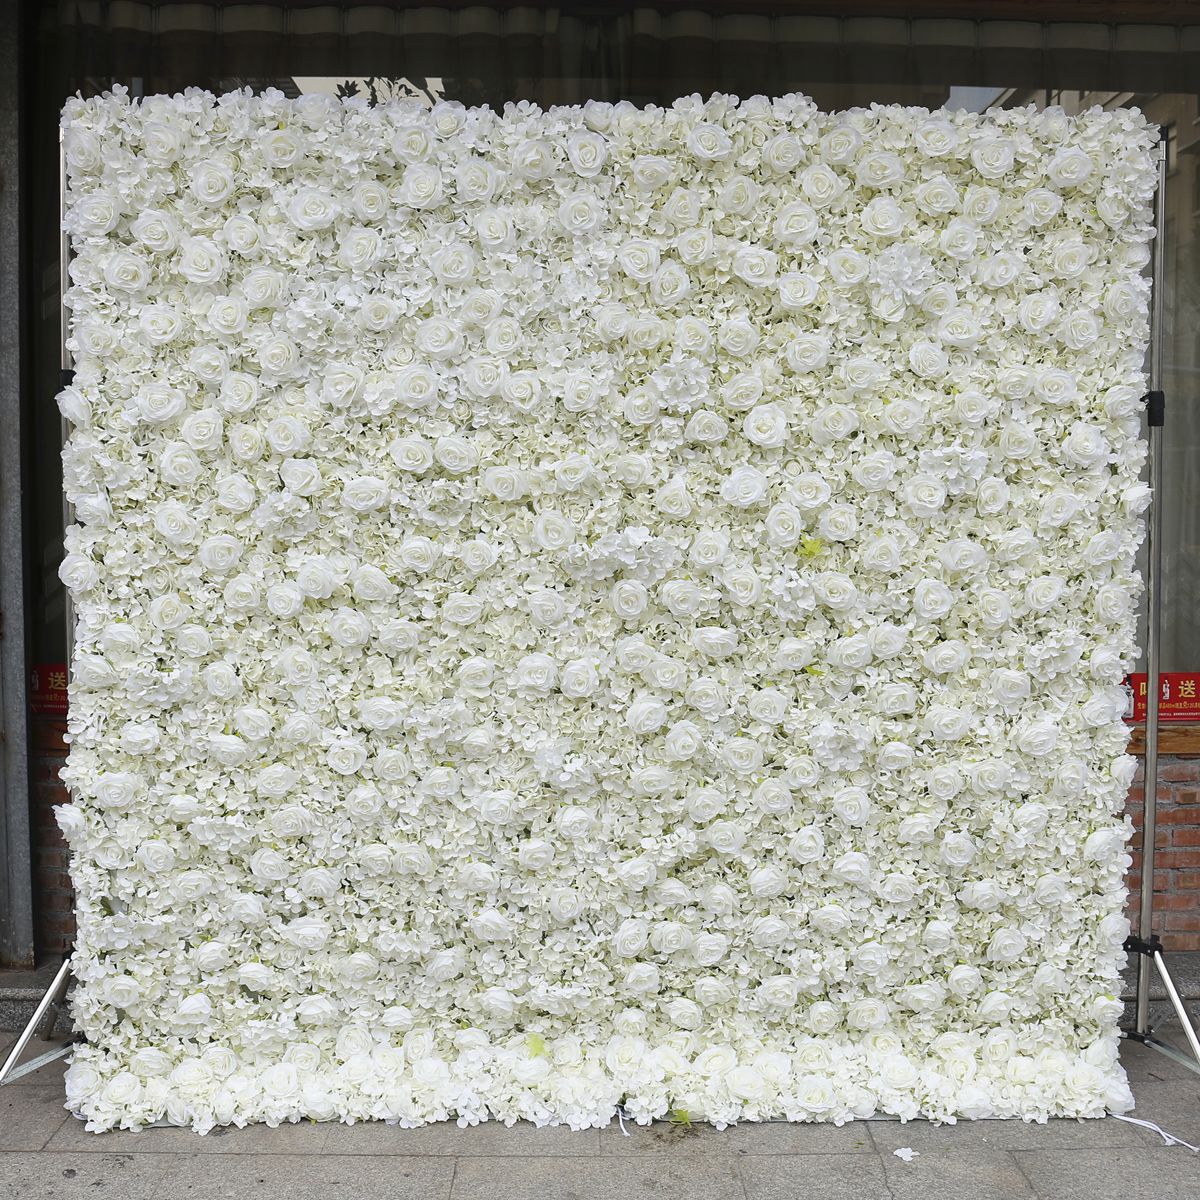 آمازون کراس مرزی پایین پارچه سفید شبیه سازی شده دیوار گل پس زمینه دیوار گل رز گلدوزی توپ تزئین عروسی